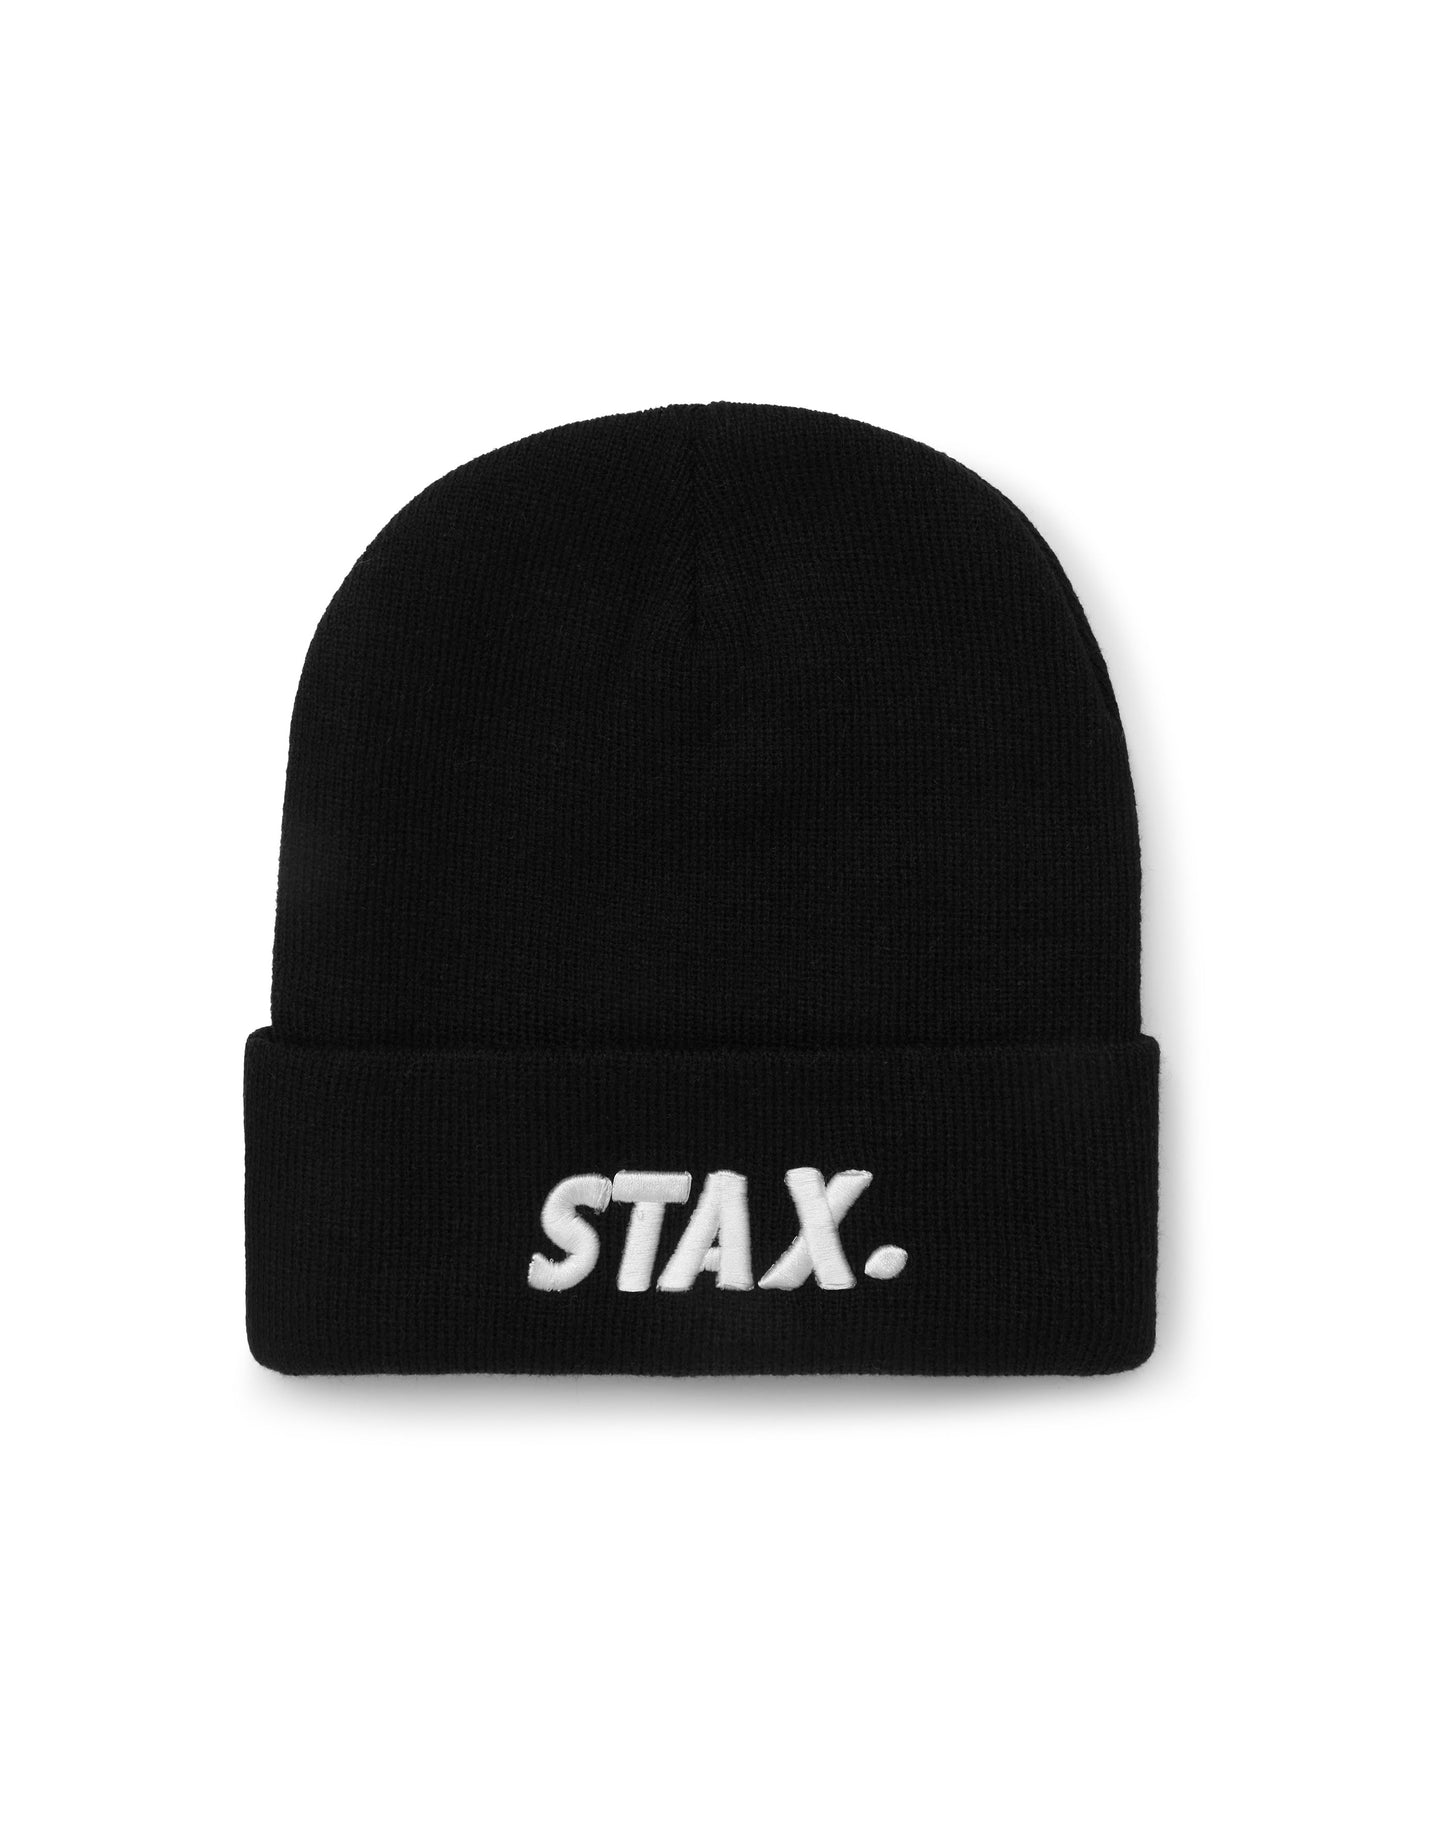 STAX. Unisex Beanie - Black